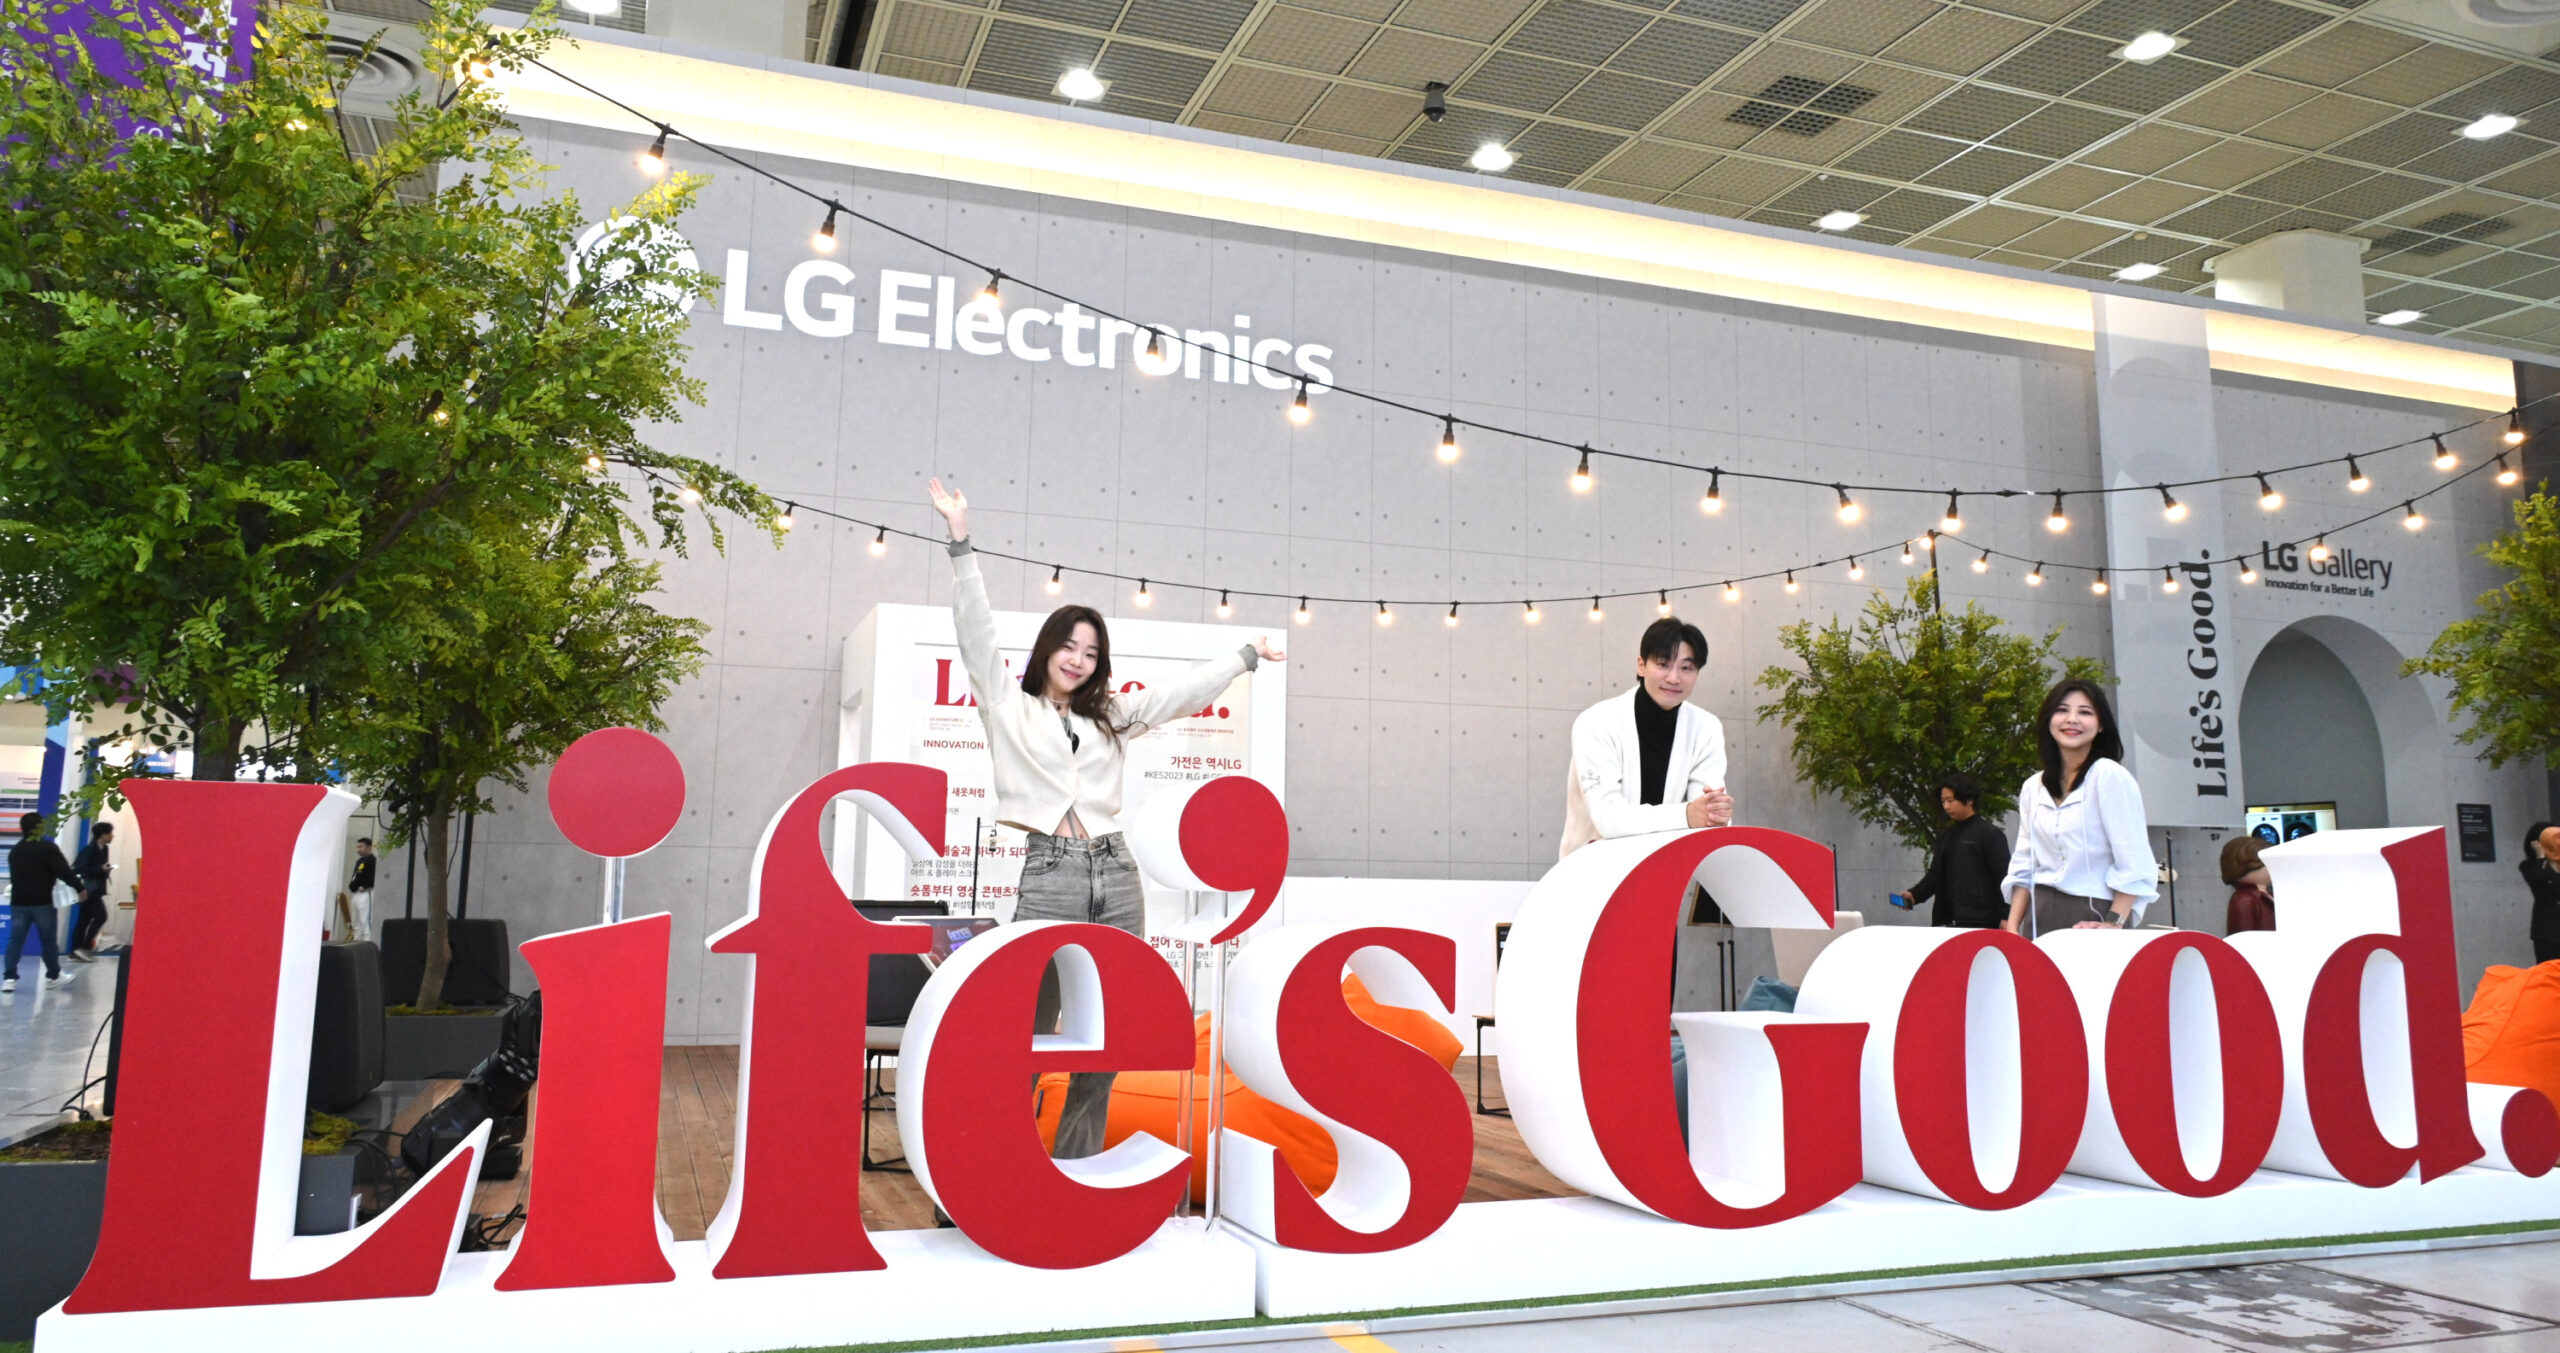 24일부터 나흘간 서울 코엑스에서 열리는 제54회 한국전자전에서 LG전자가 더 나은 삶과 미래에 대한 낙관적 메시지를 담은 LG전자 브랜드 슬로건 ‘Life’s Good’의 핵심가치를 조형물과 브랜드 영상 등으로 선보였다.